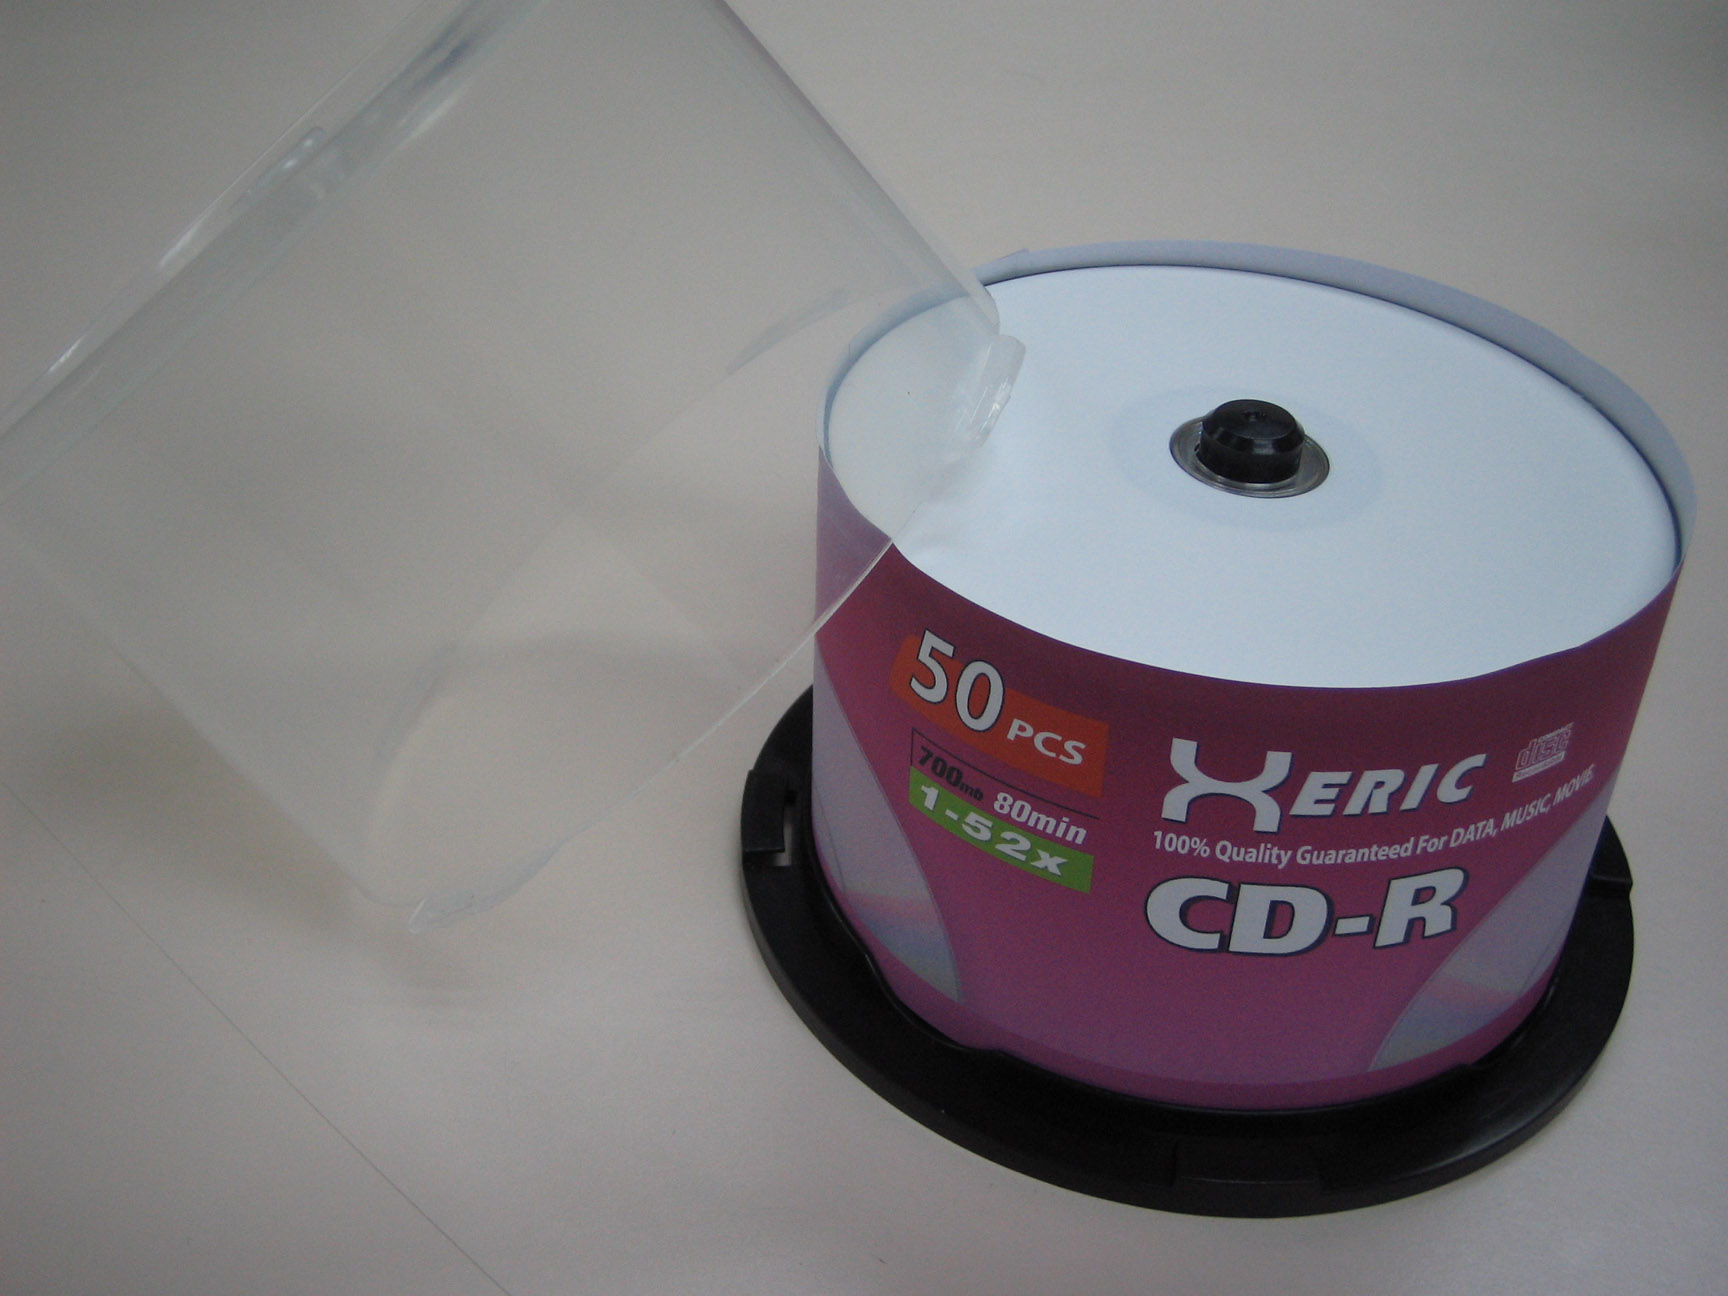 CD-R 52x 700mb 80min. Silver/Green Grade A